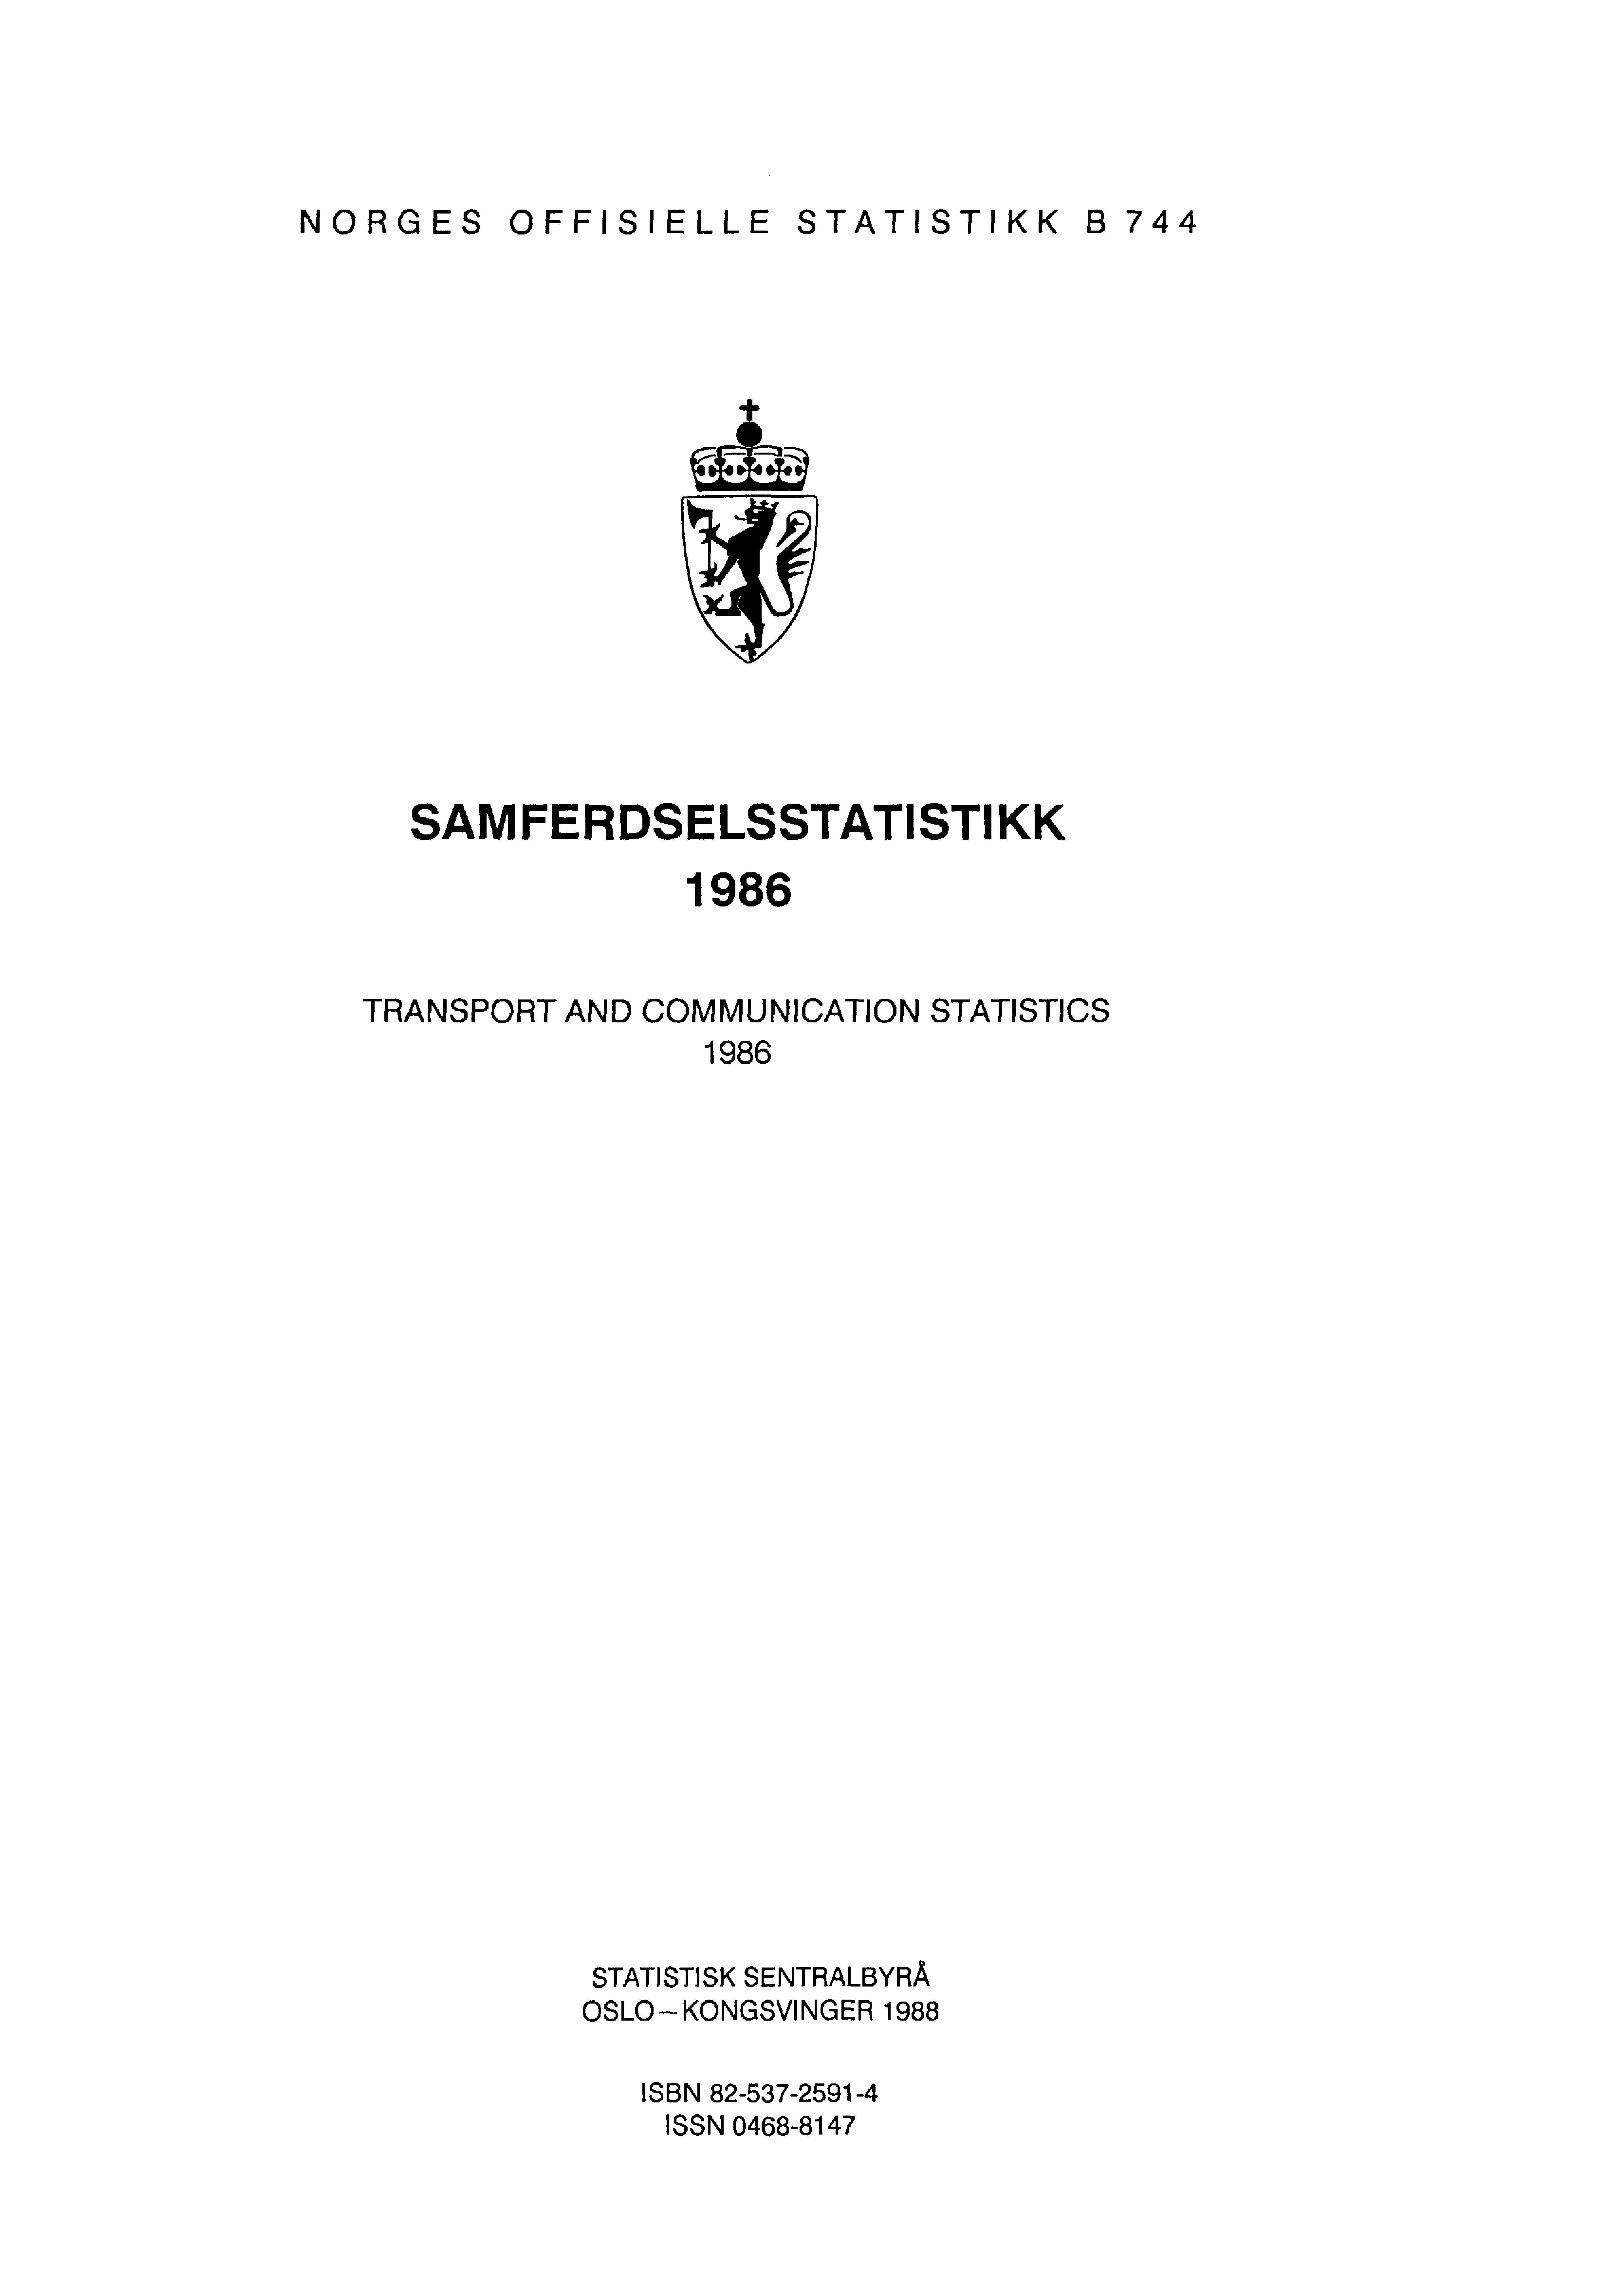 NORGES OFFISIELLE STATISTIKK B 744 SAMFERDSELSSTATISTIKK 1986 TRANSPORT AND COMMUNICATION